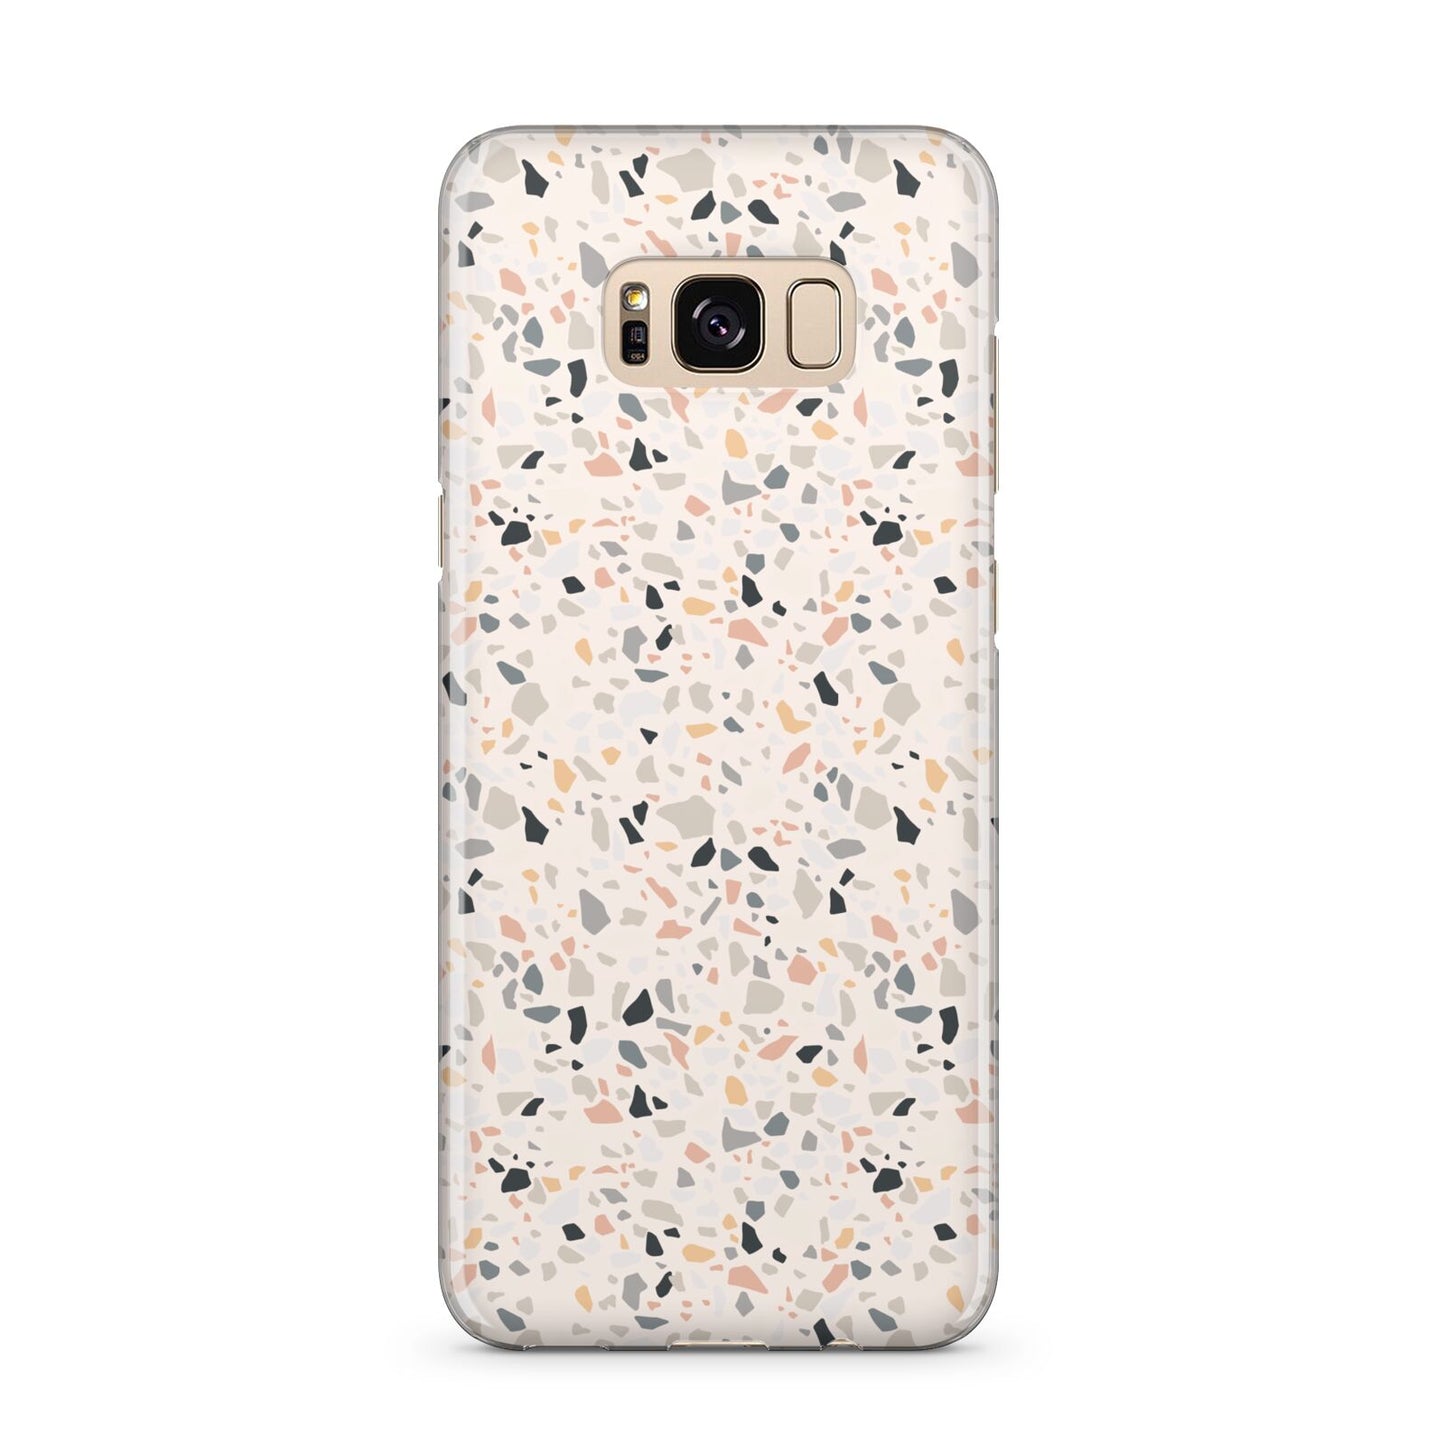 Terrazzo Stone Samsung Galaxy S8 Plus Case